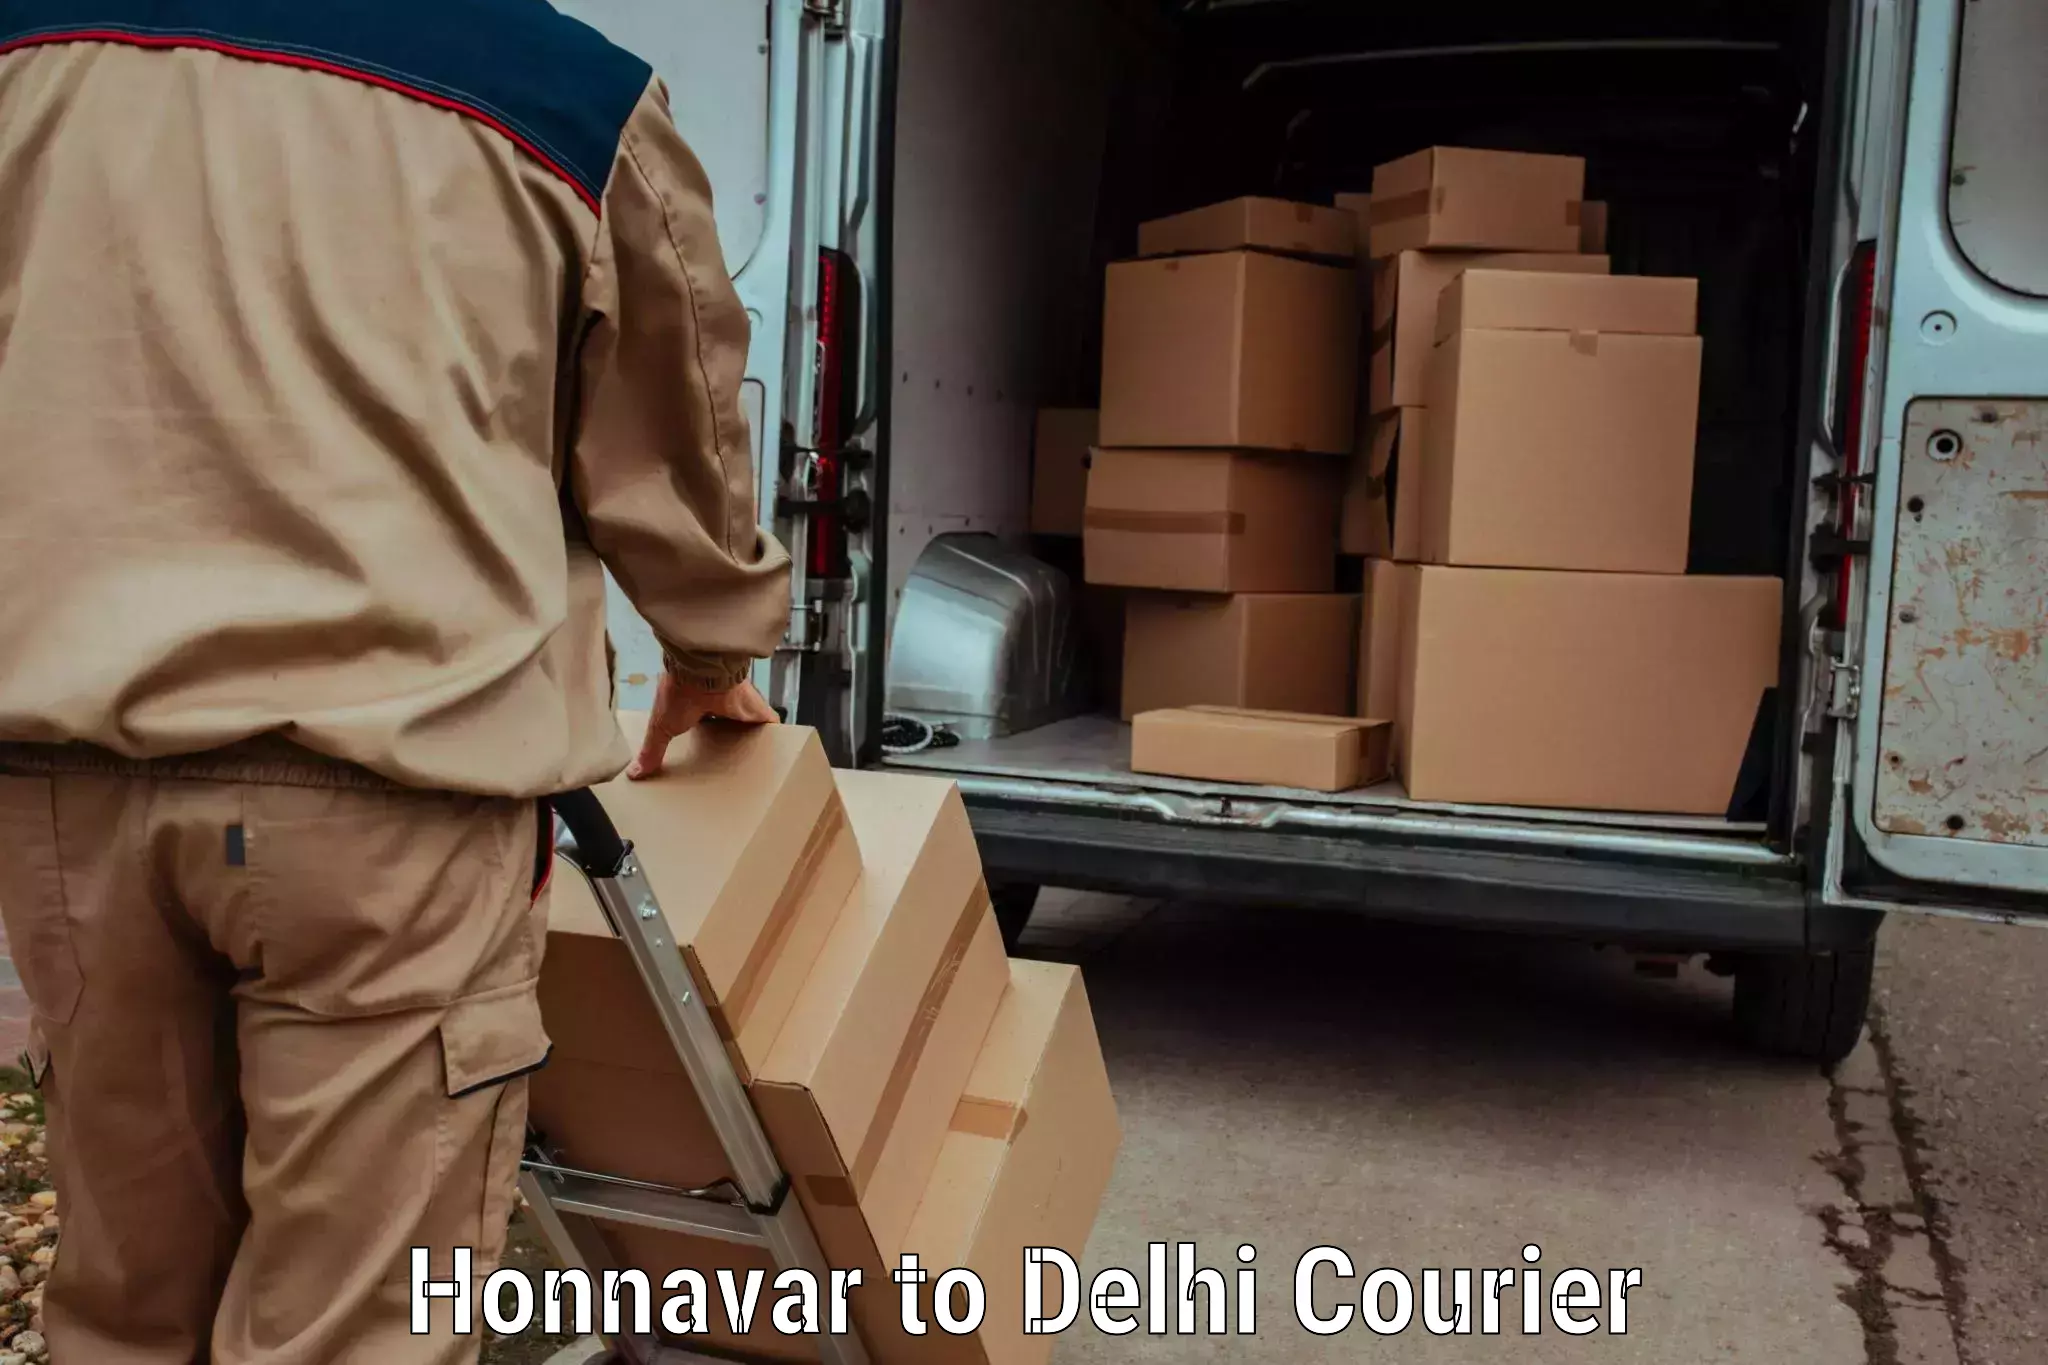 Courier service comparison Honnavar to IIT Delhi